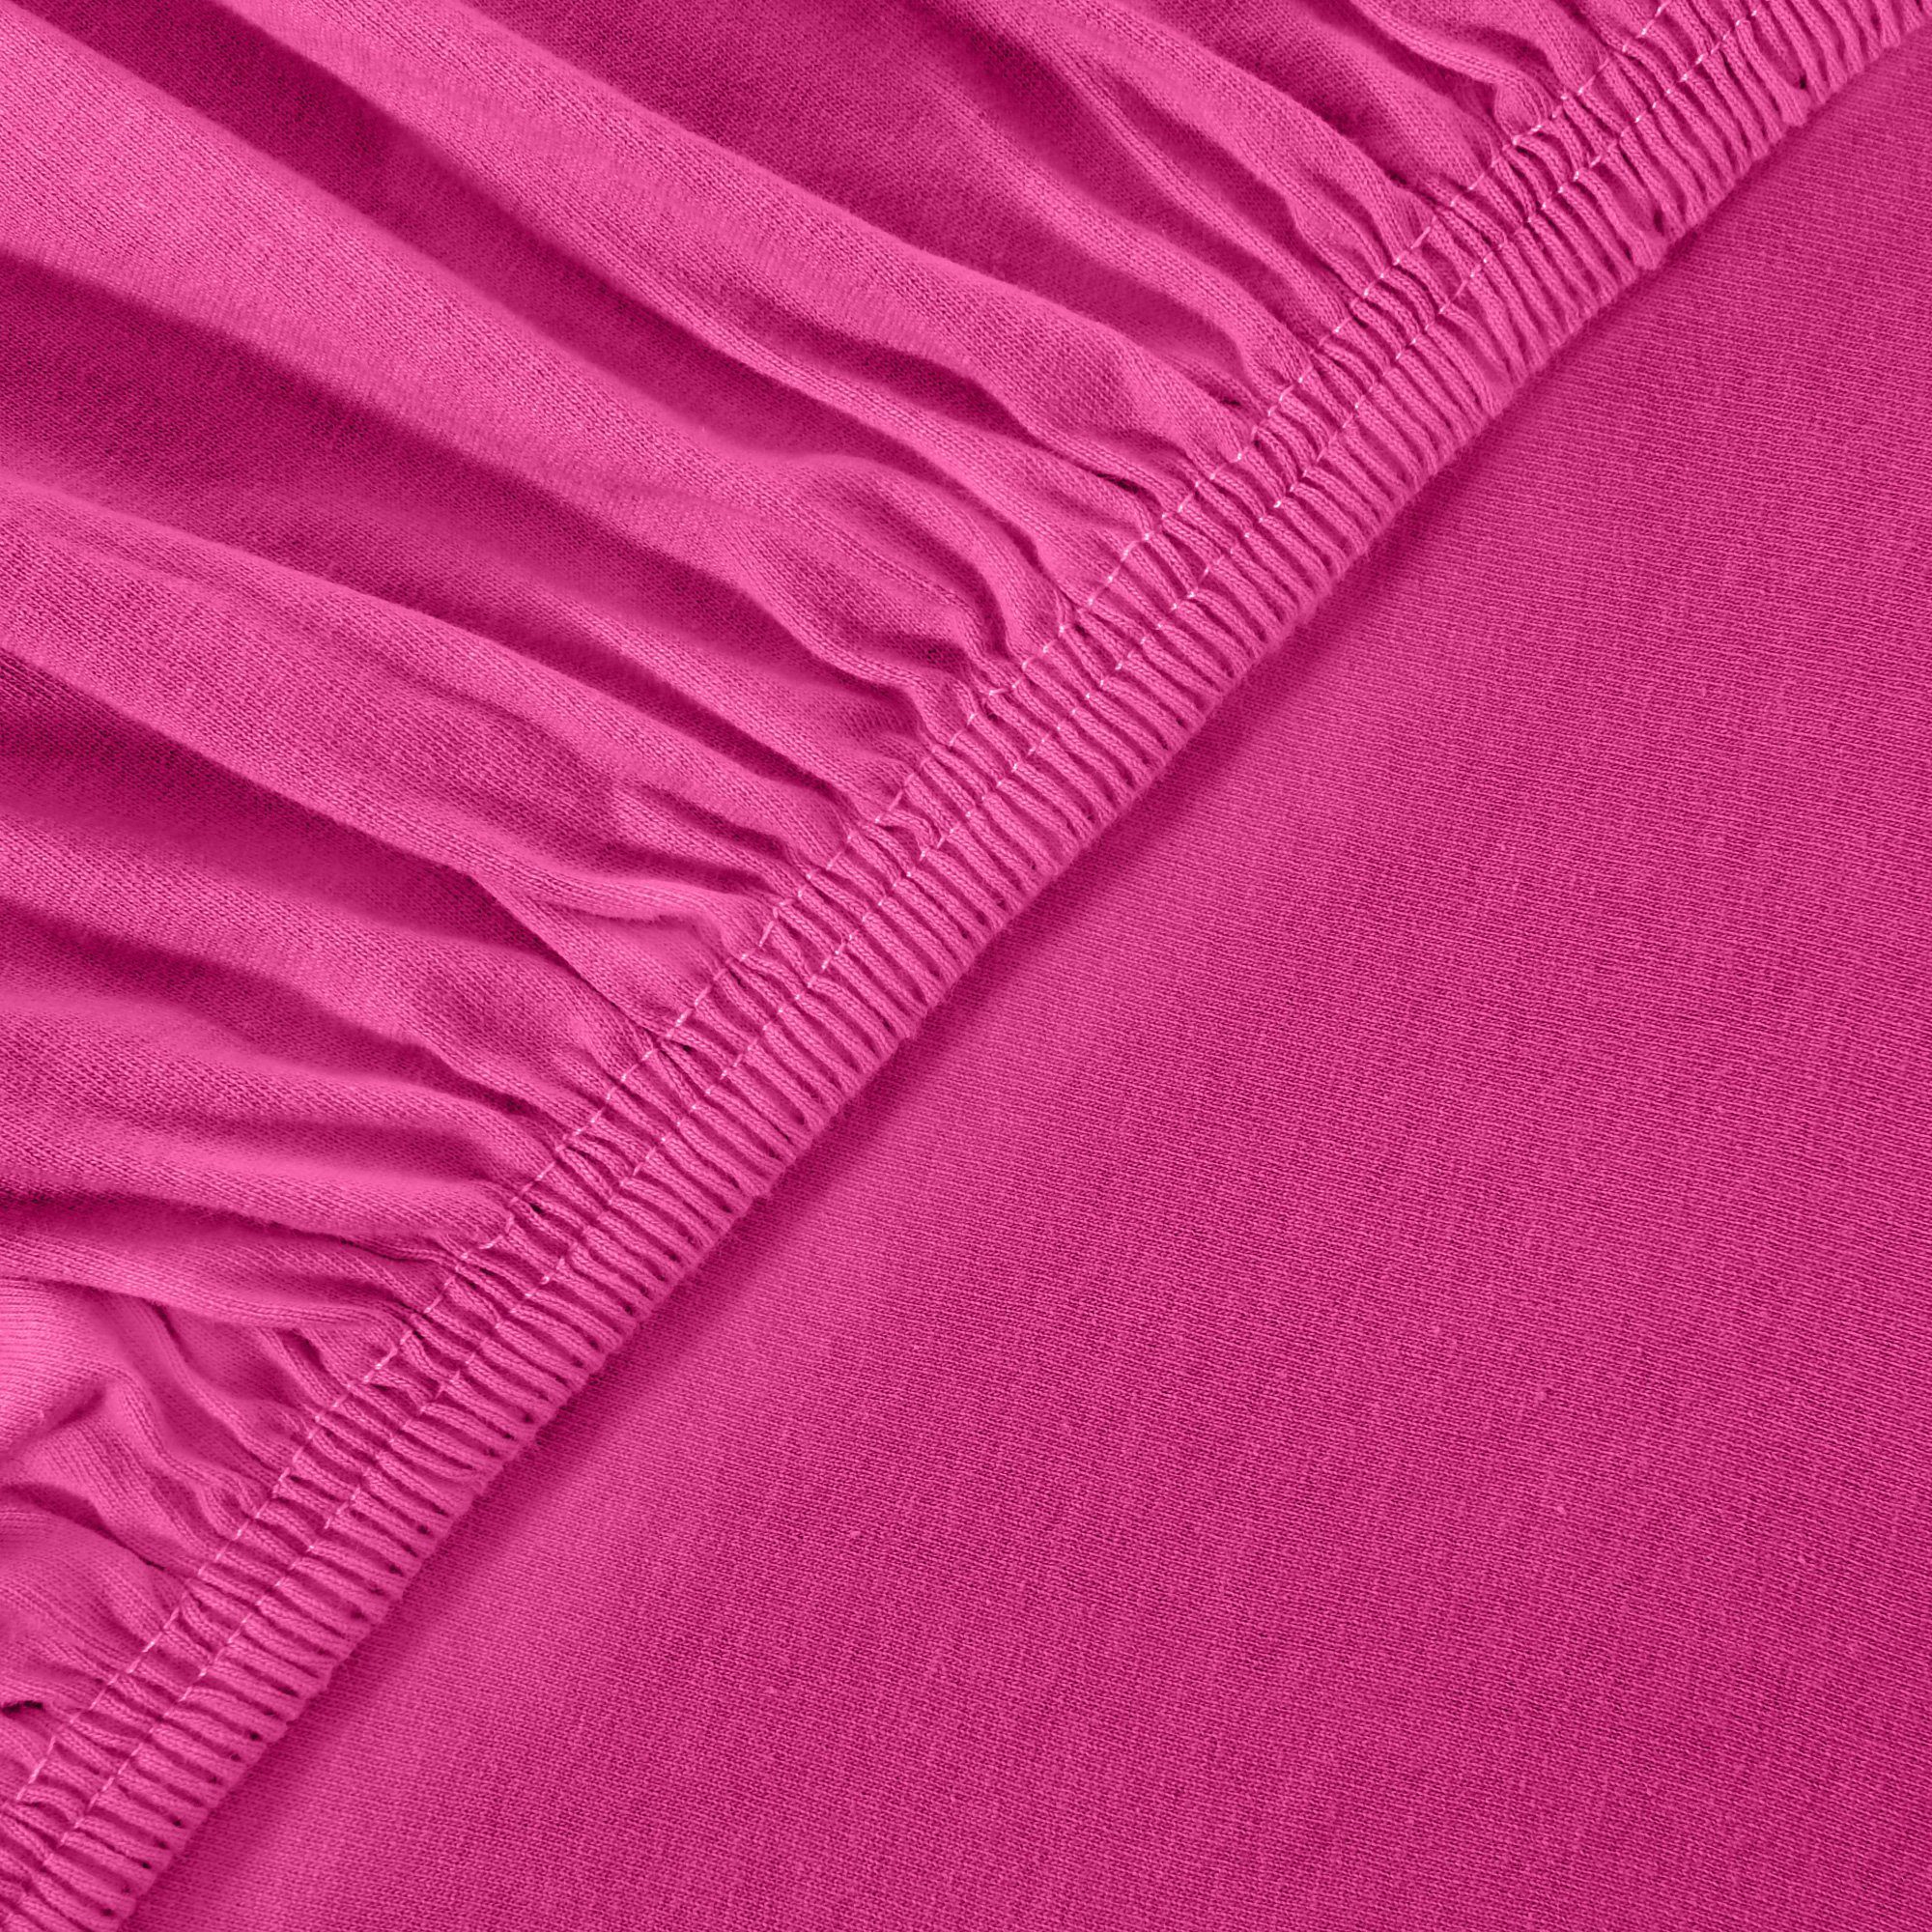 diverse 100% Farben und Baumwolle, Gummizug: Pink anschmiegsam dehnbar, Spannbettlaken Größen Classic leevitex®, Jersey, / & rundum, Magenta